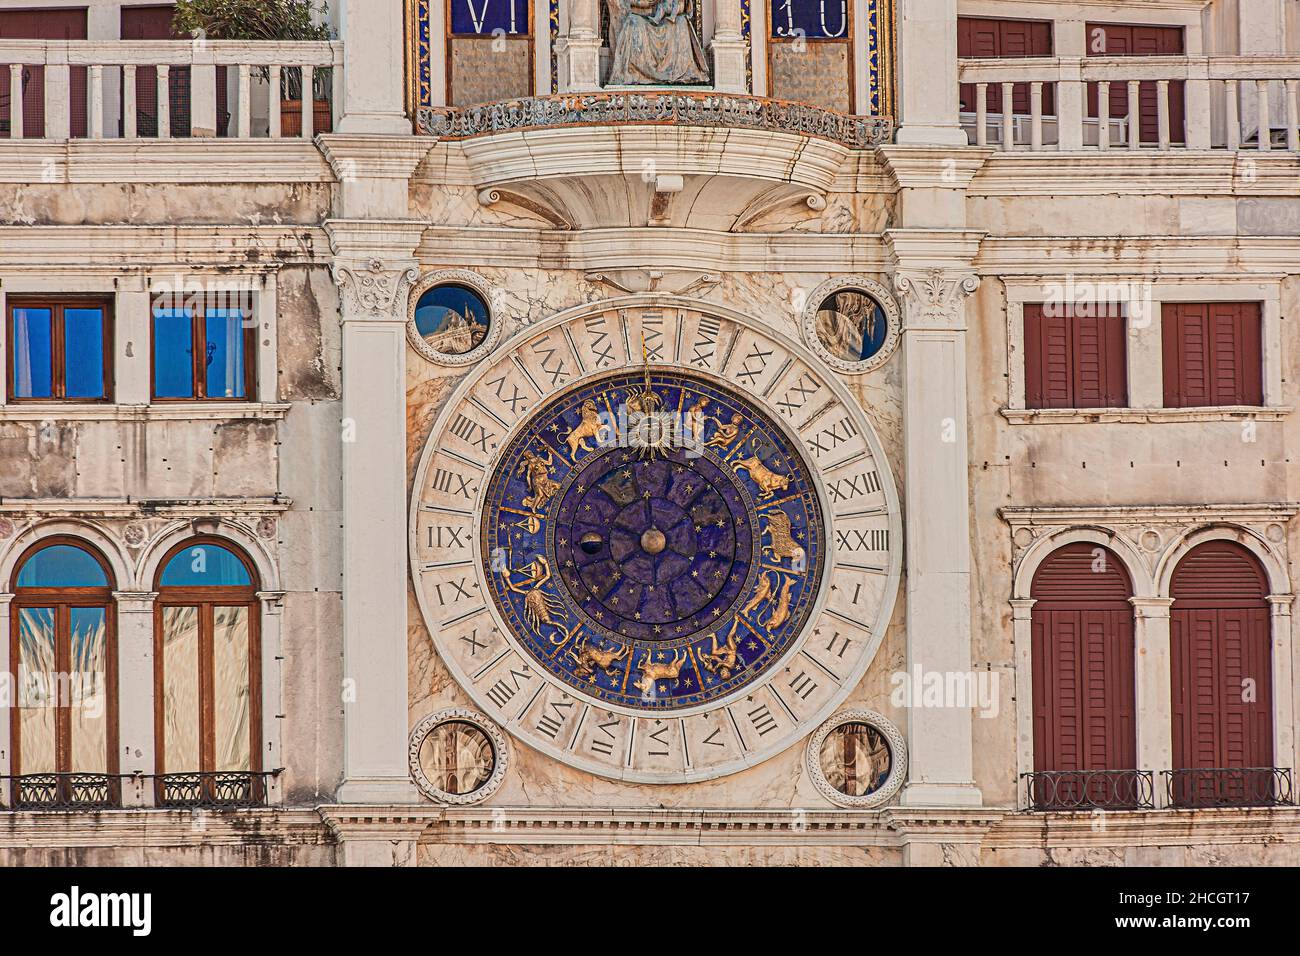 Detalle de la torre del reloj en Venecia, en Italia un ejemplo de arquitectura renacentista Foto de stock